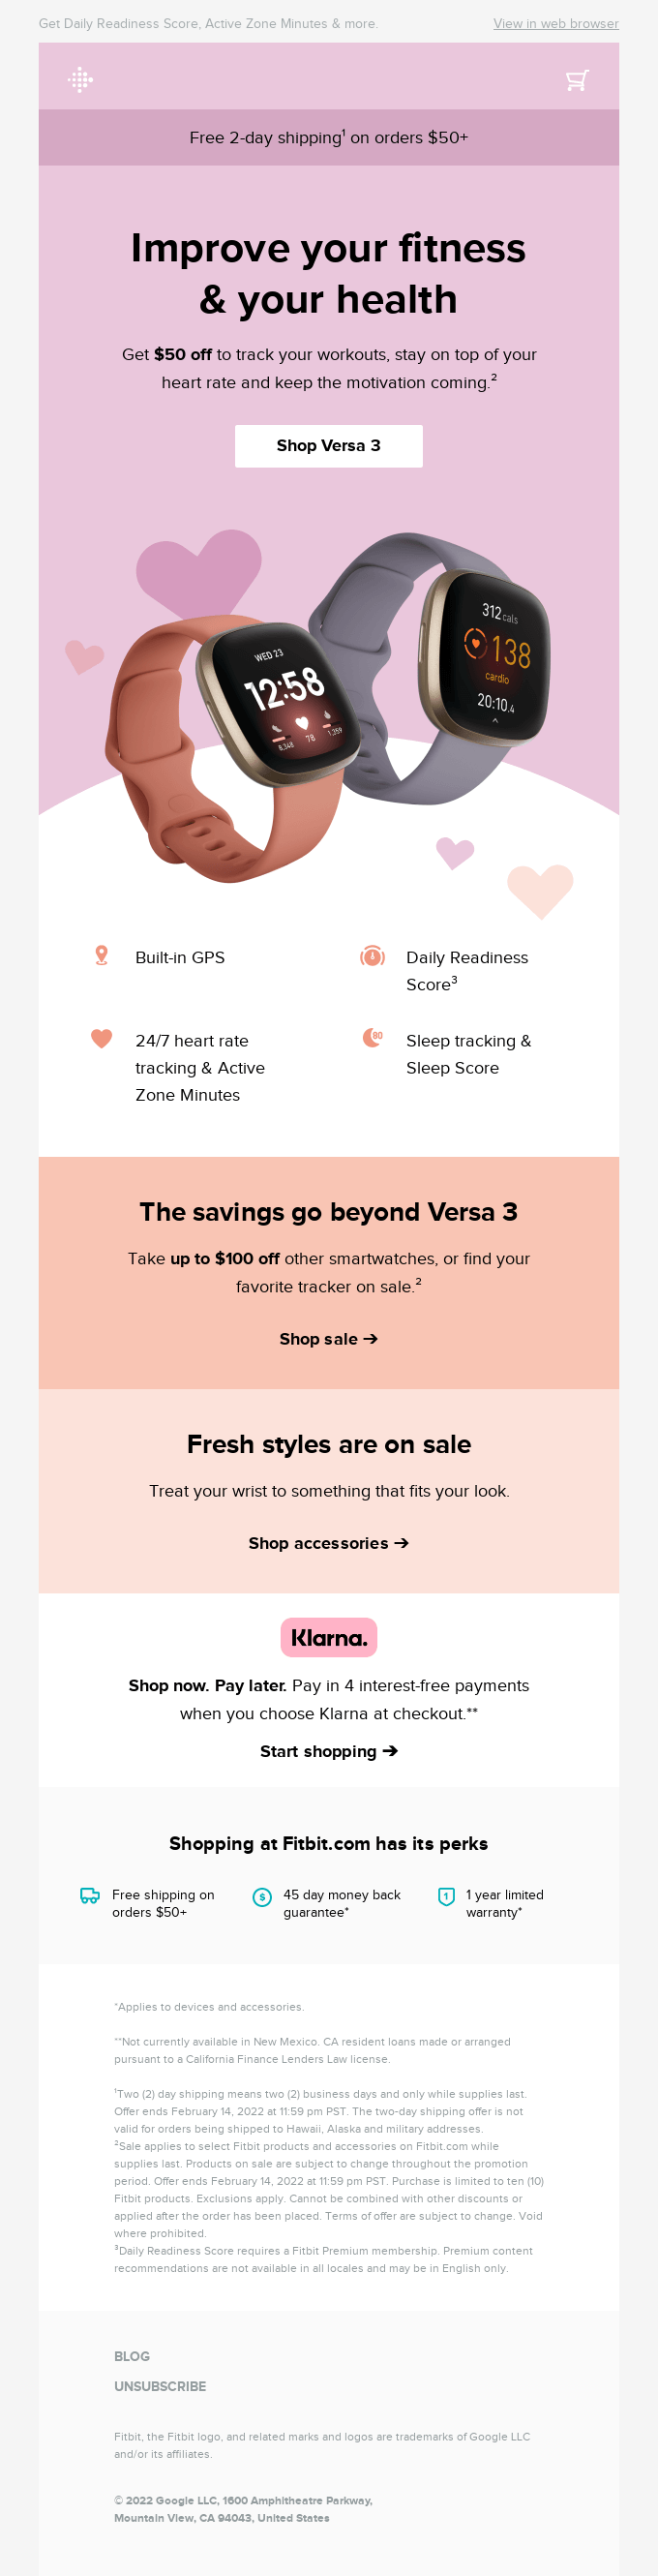 Upgrade & save $50 on Versa 3